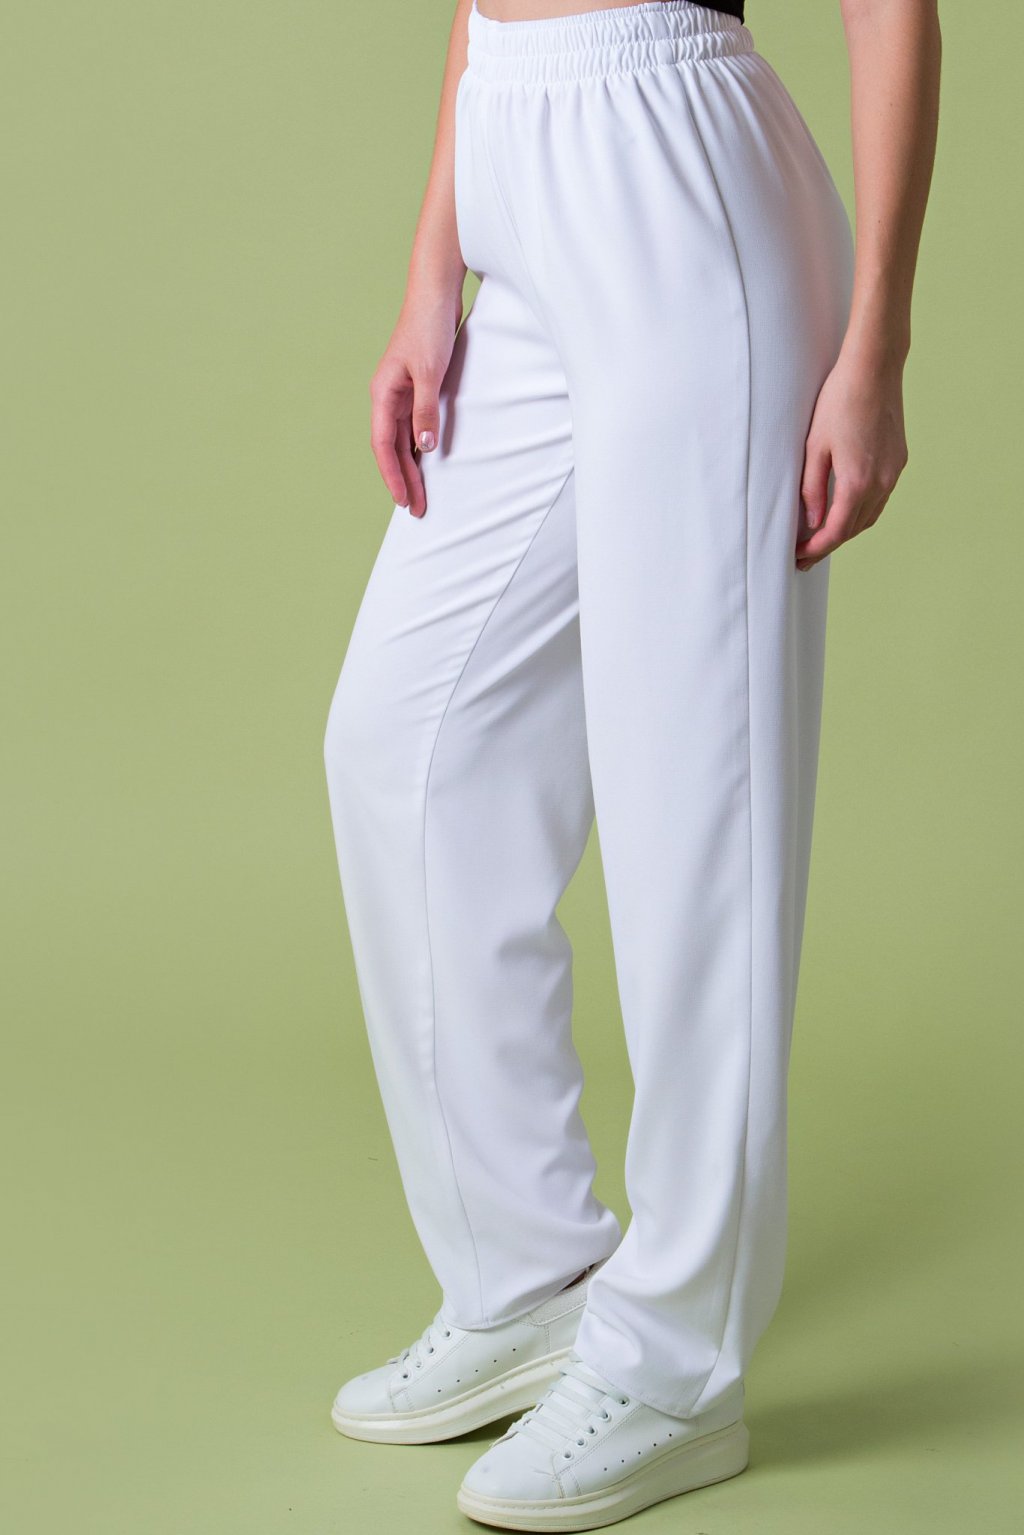 Свободные брюки цвет белый Бр-43-2 - 7